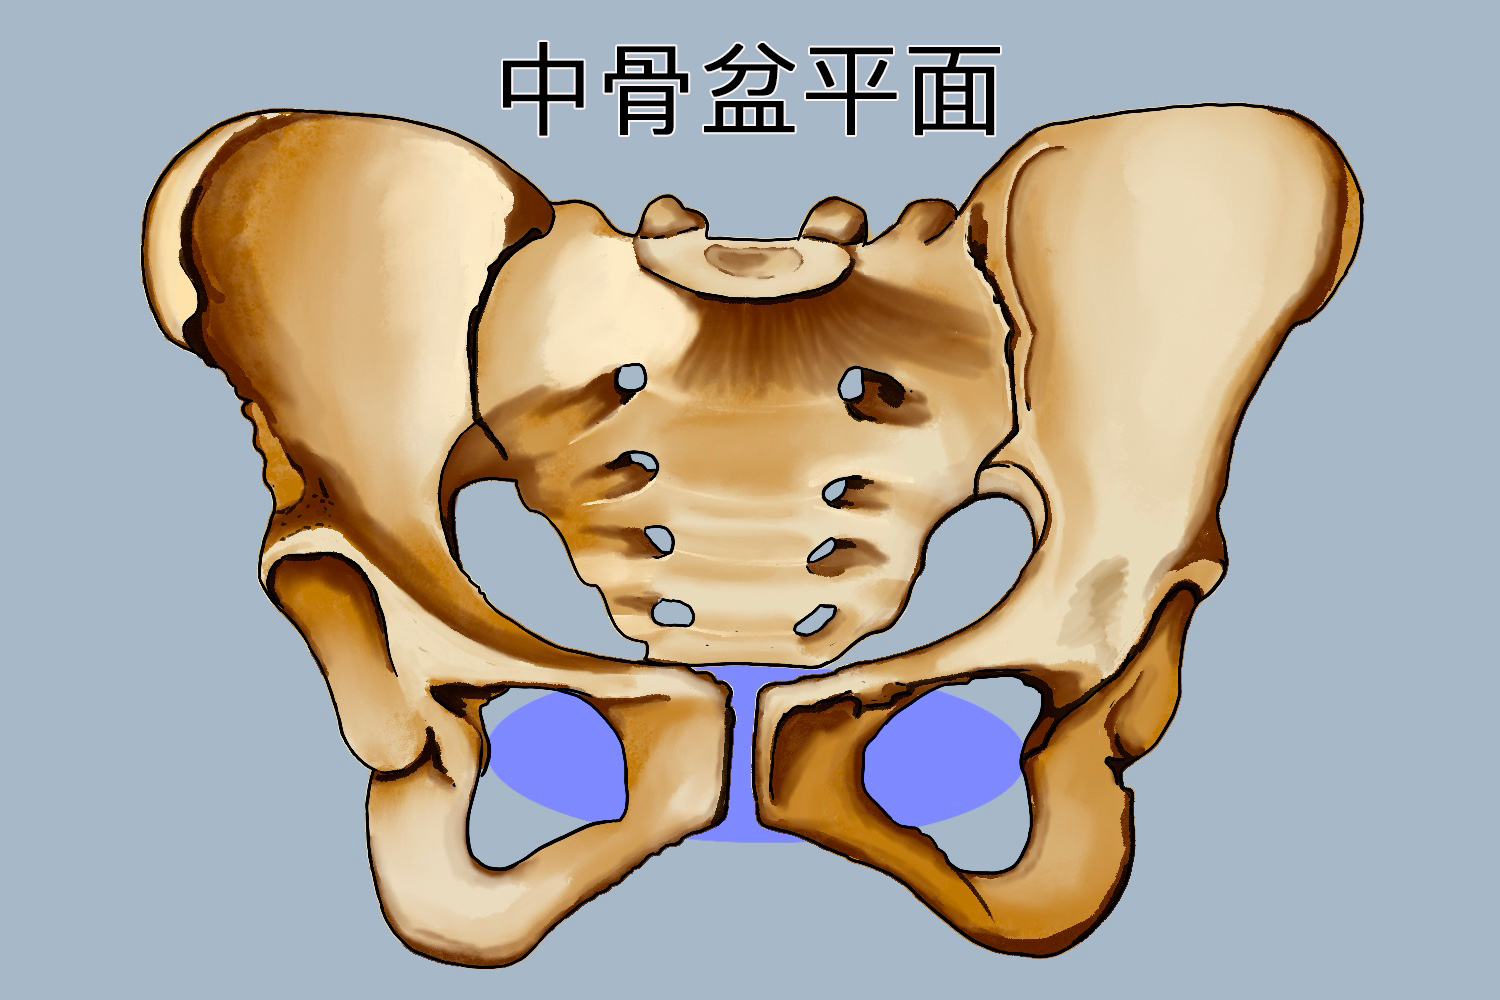 中骨盆平面为骨盆最小平面,是骨盆腔最狭窄的部分,呈前后径长的纵椭圆